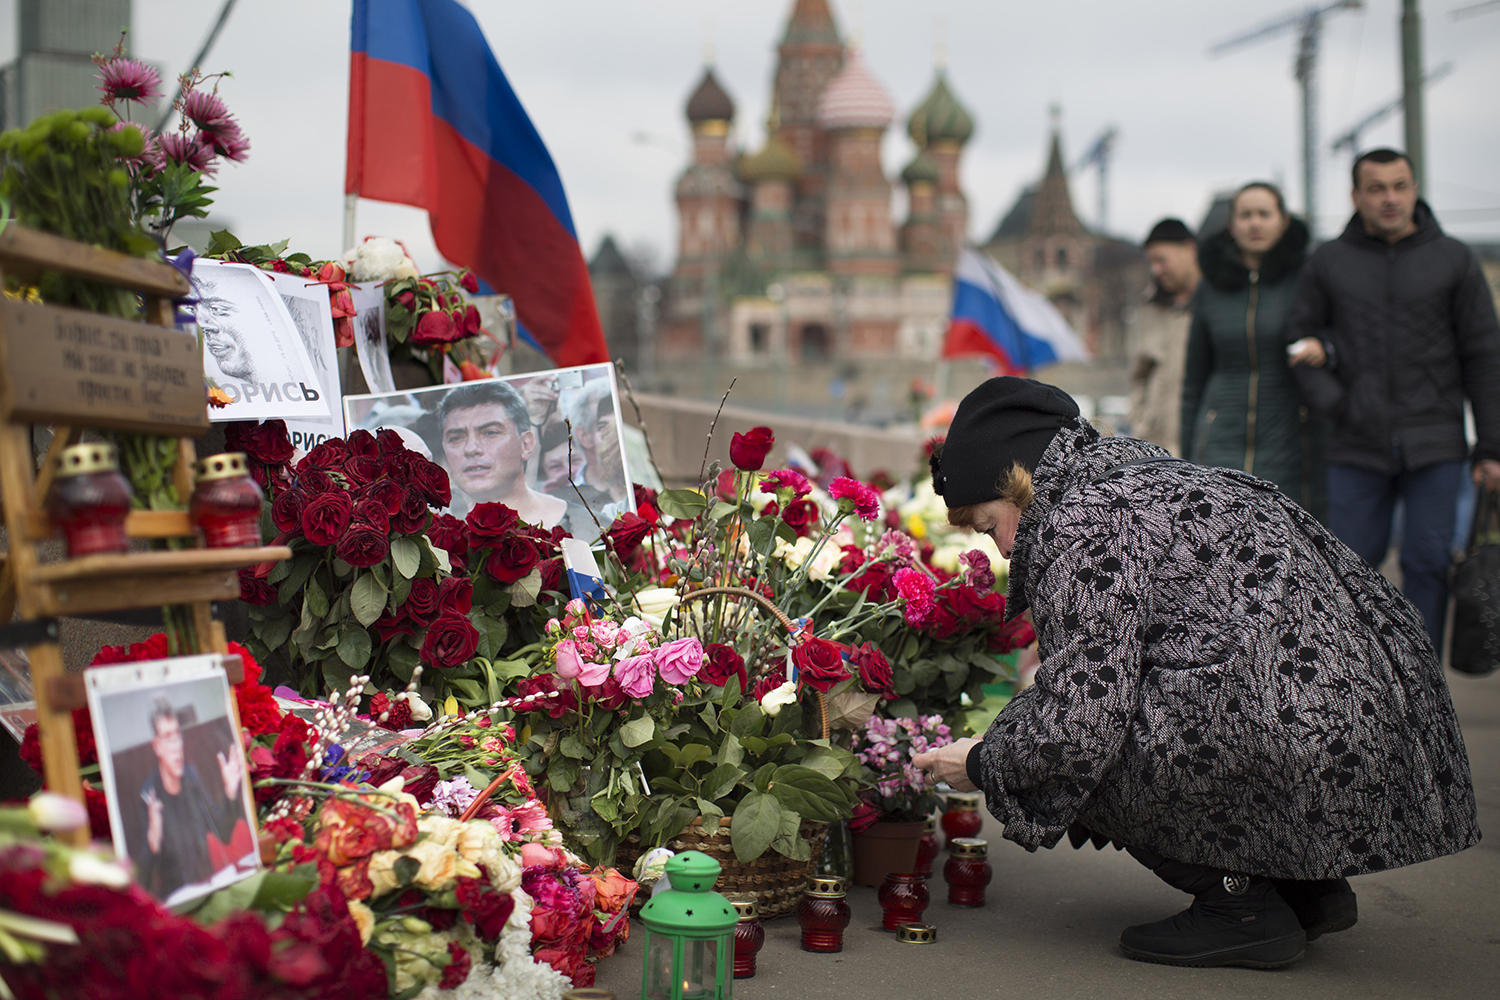 El Parlamento se niega a investigar el asesinato de Nemtsov